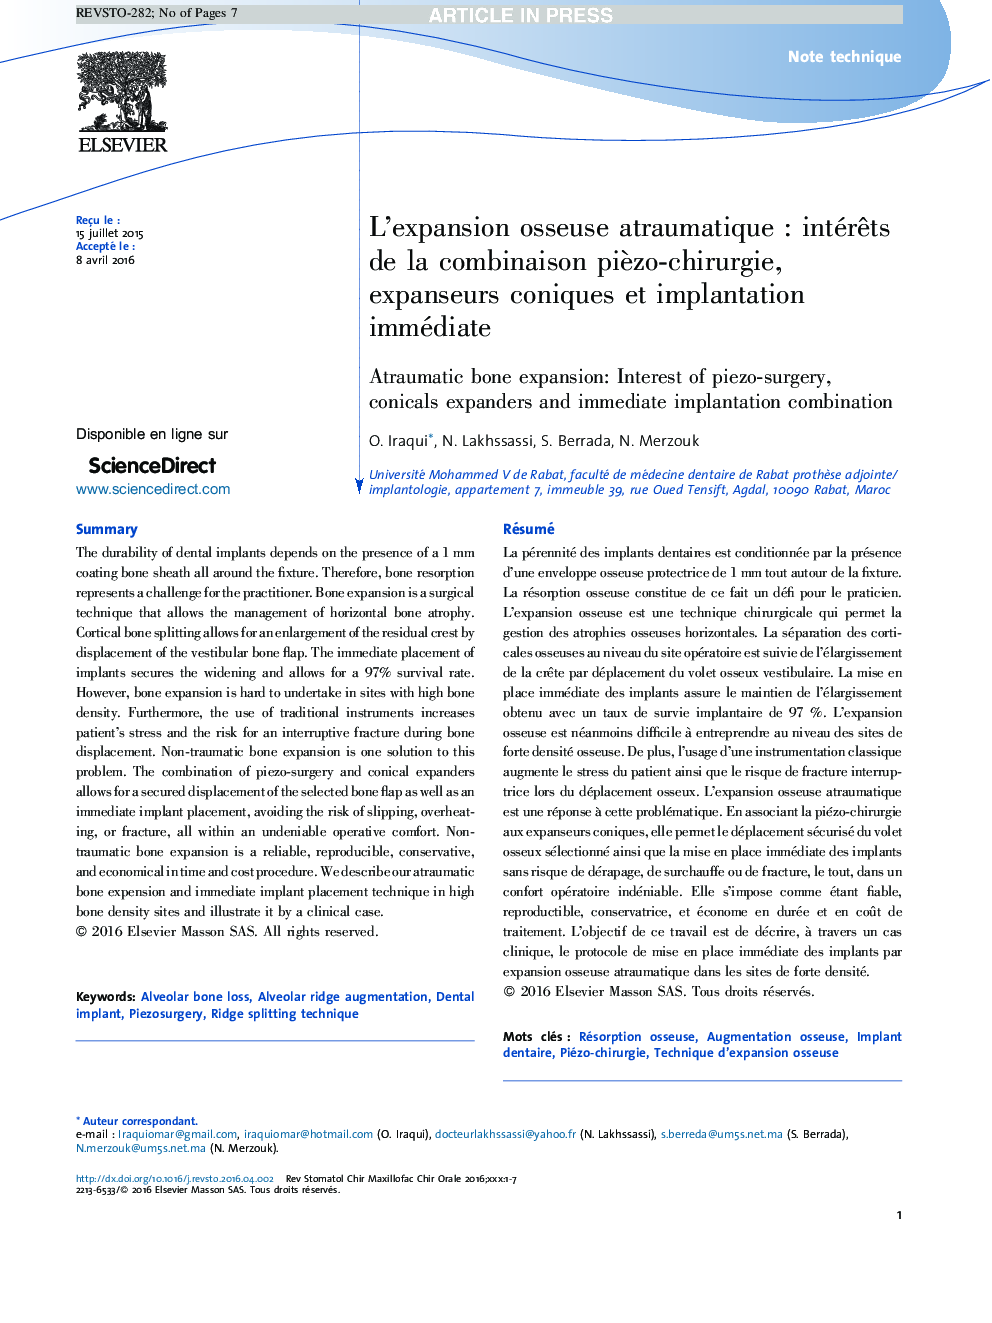 L'expansion osseuse atraumatiqueÂ : intérÃªts de la combinaison piÃ¨zo-chirurgie, expanseurs coniques et implantation immédiate